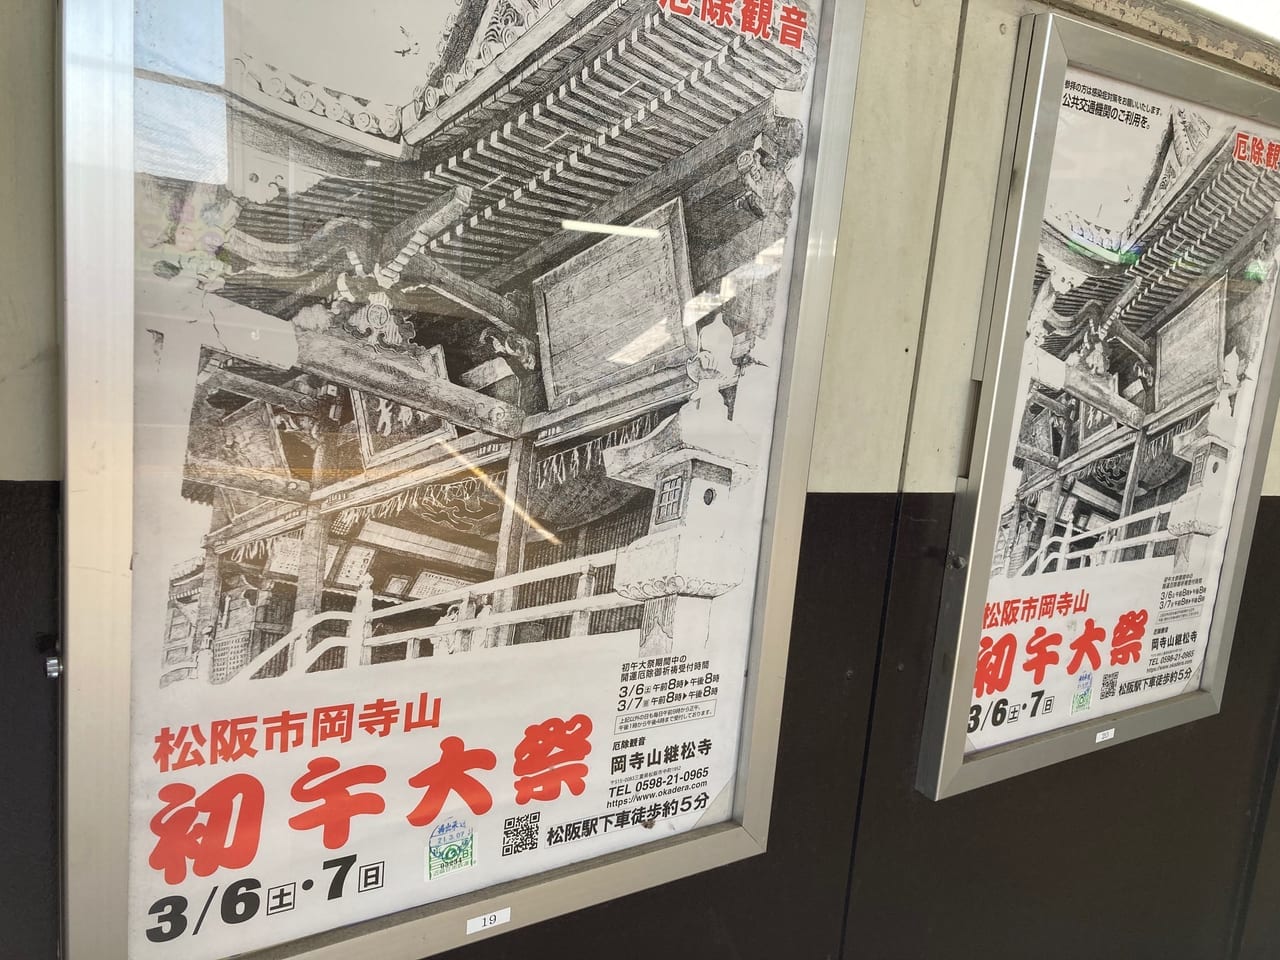 松阪駅に貼ってある2021年3月初午大祭のポスター